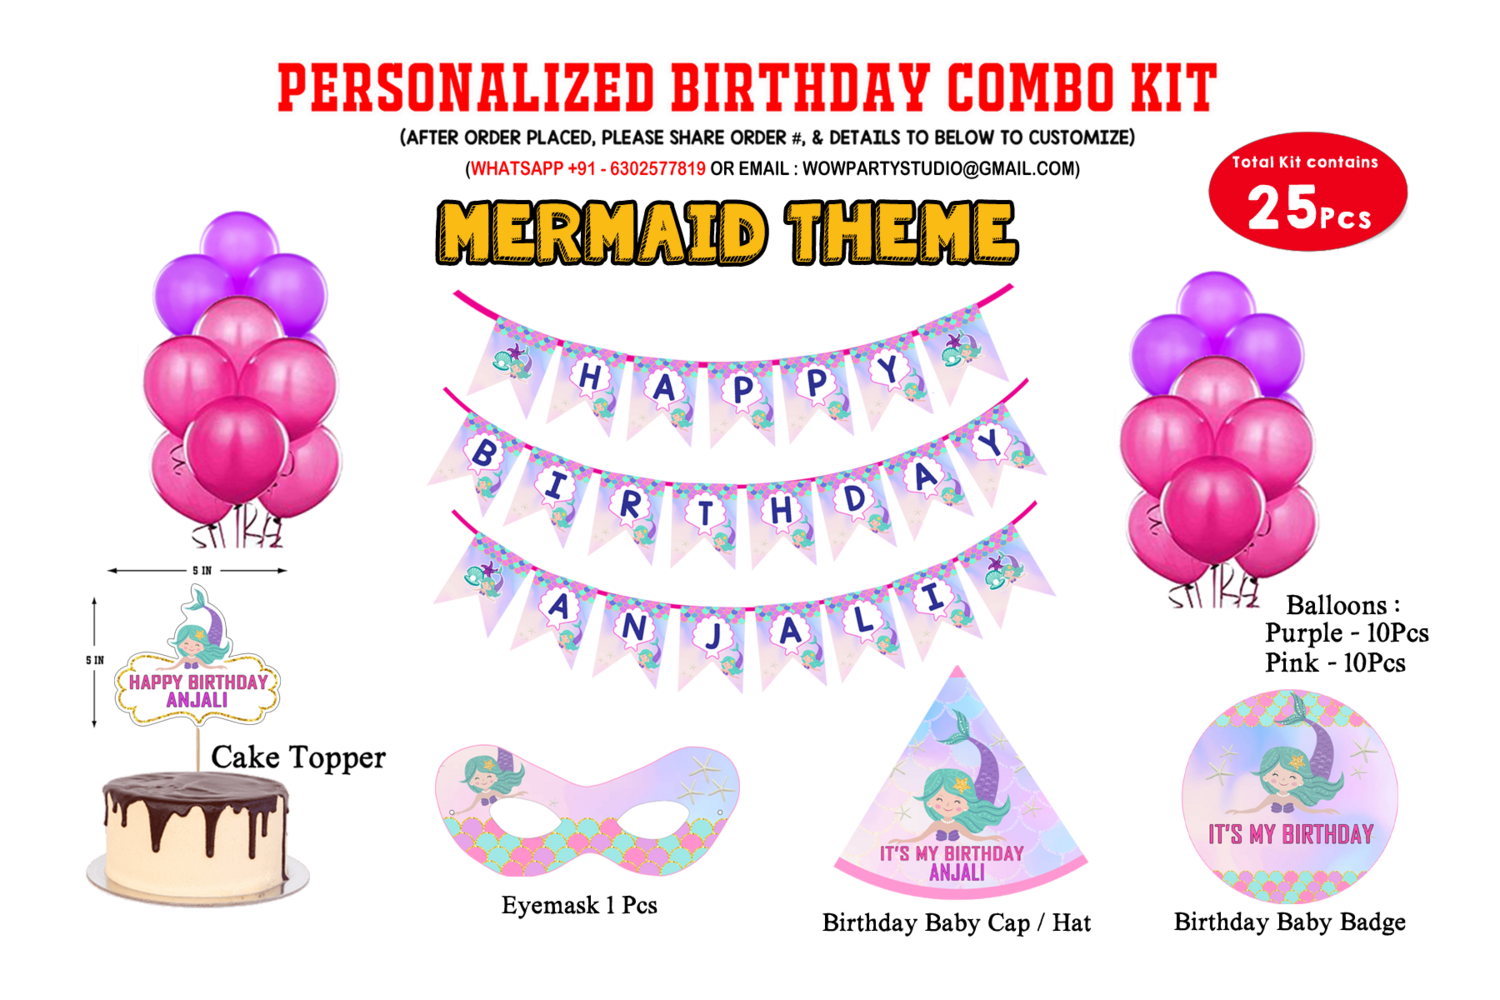 Mermaid Theme - Combo Kit 25Pcs